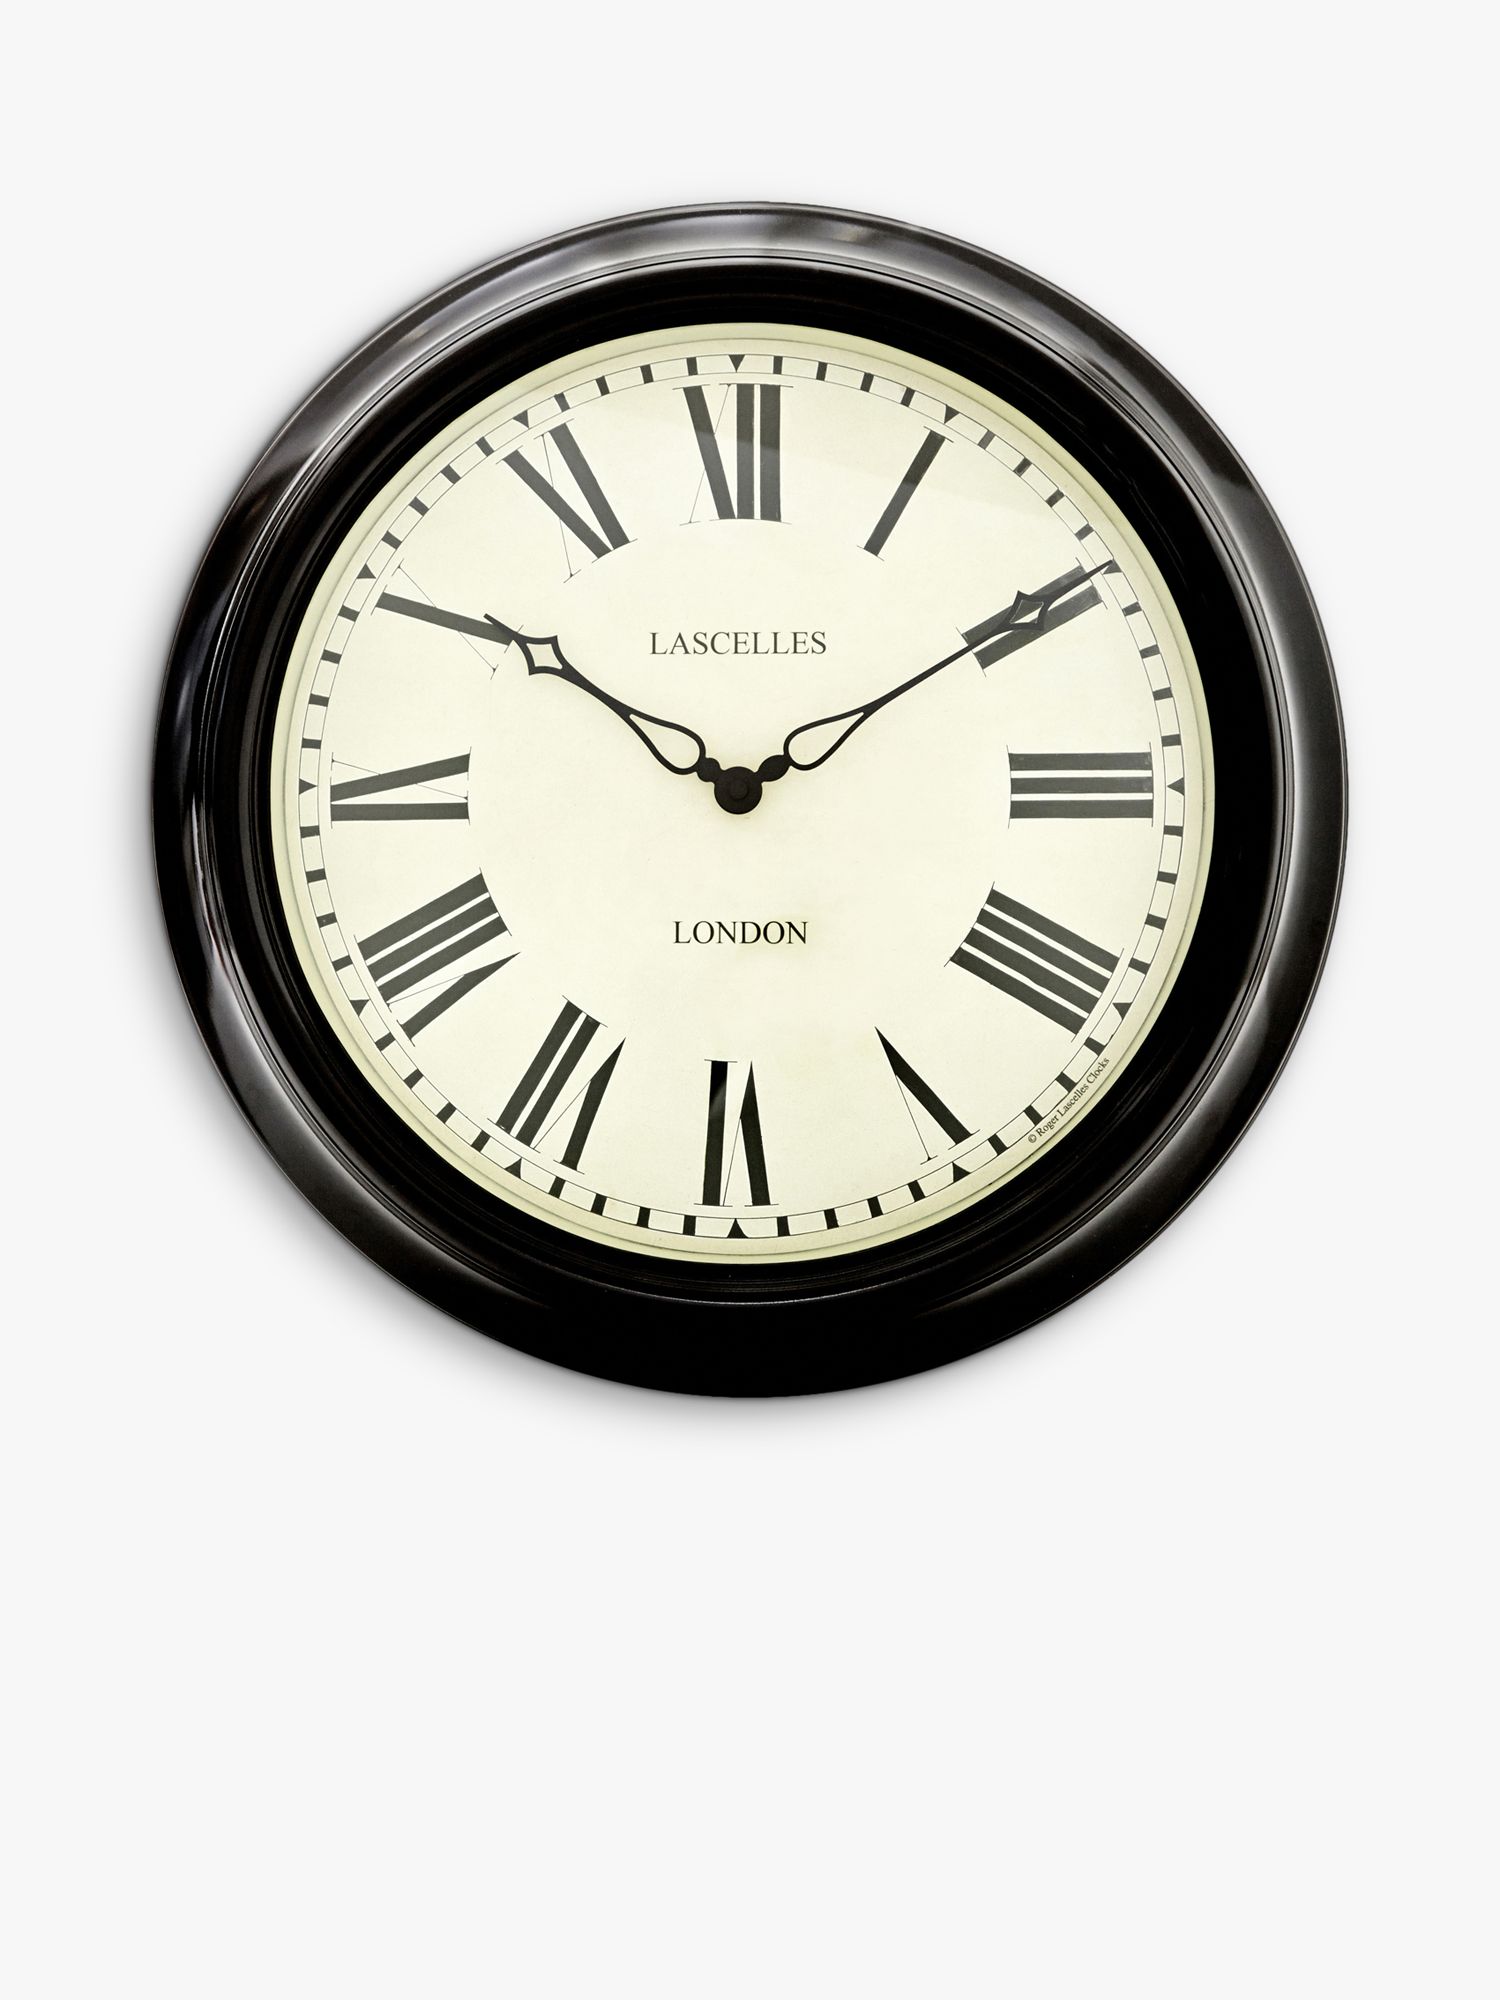 Roger Lascelles Glasgow Station Clock 